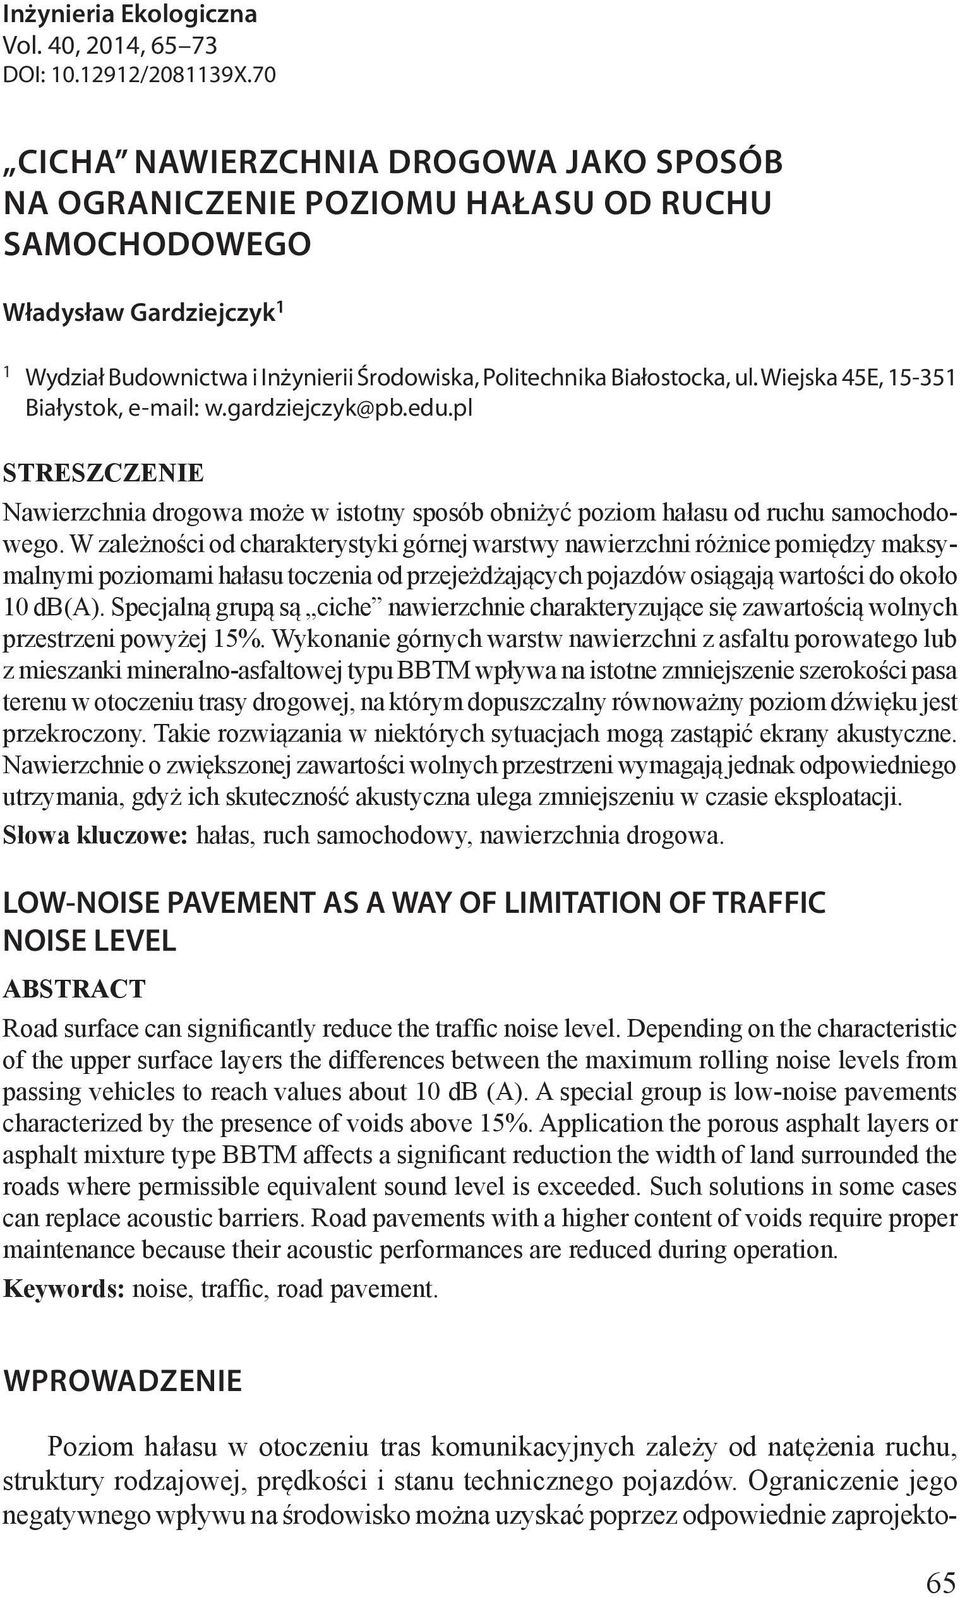 Wiejska 45E, 15-351 Białystok, e-mail: w.gardziejczyk@pb.edu.pl STRESZCZENIE Nawierzchnia drogowa może w istotny sposób obniżyć poziom hałasu od ruchu samochodowego.